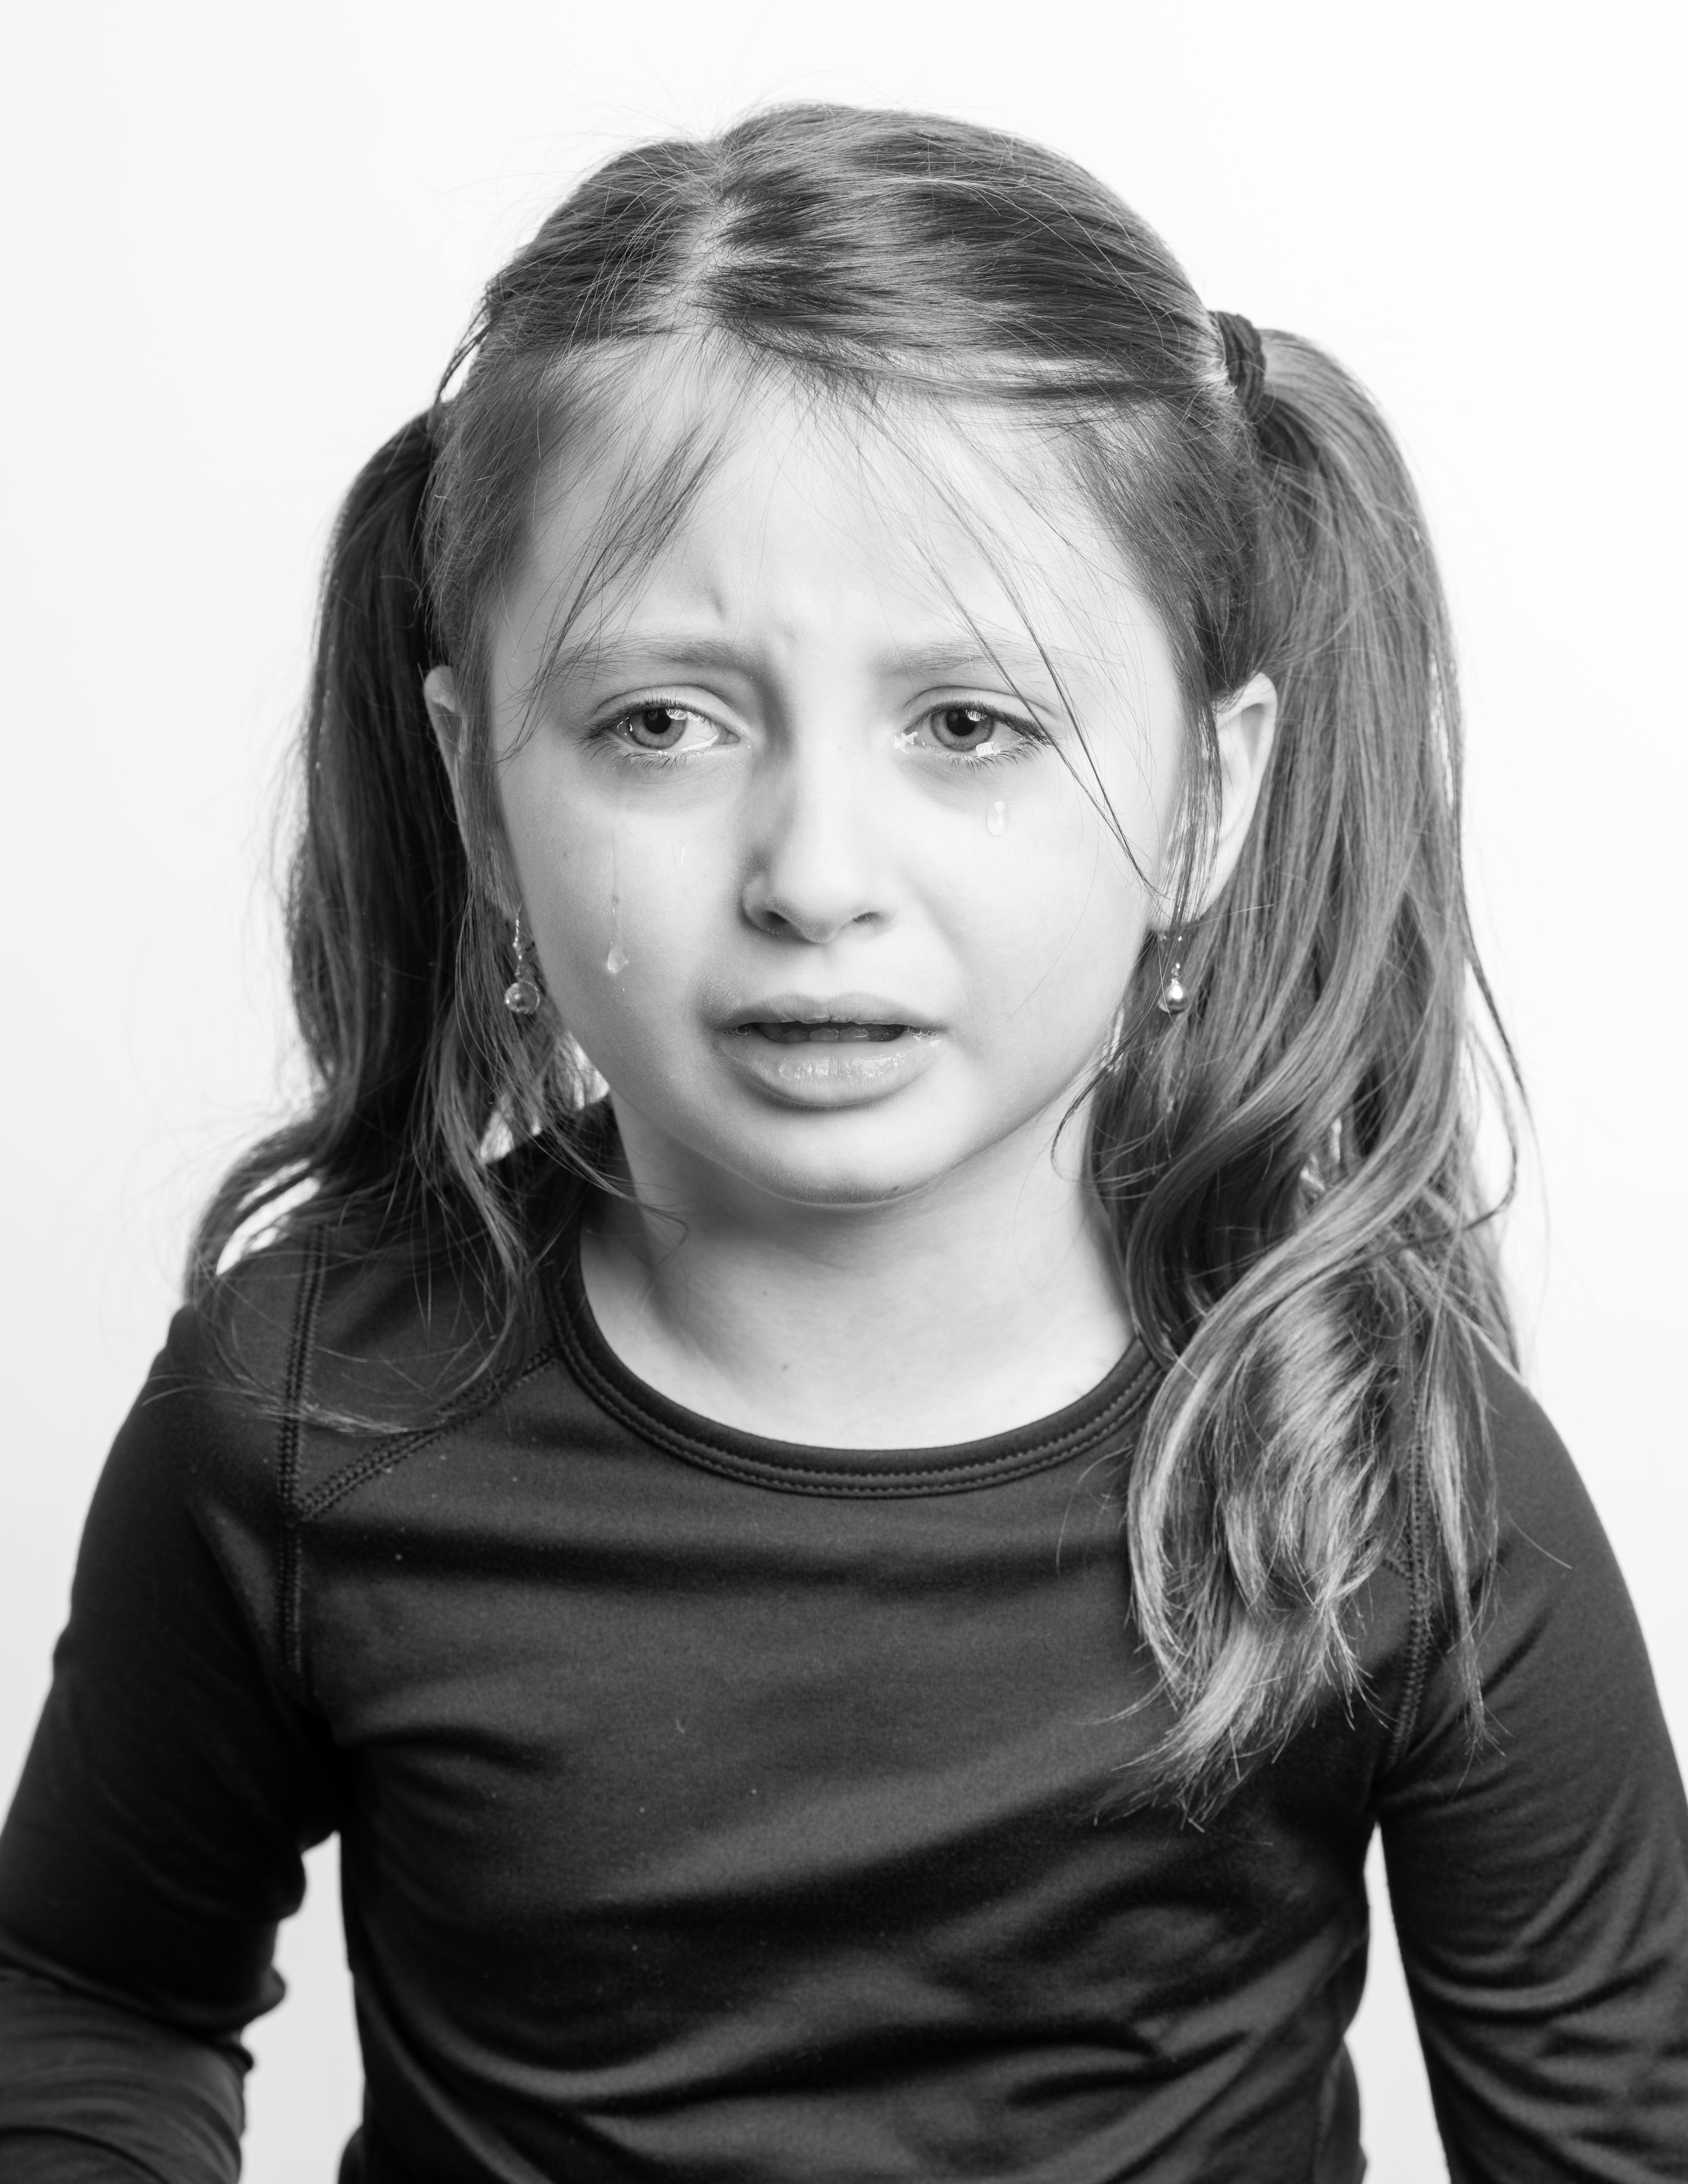 Ein kleines Mädchen weint | Quelle: Pexels